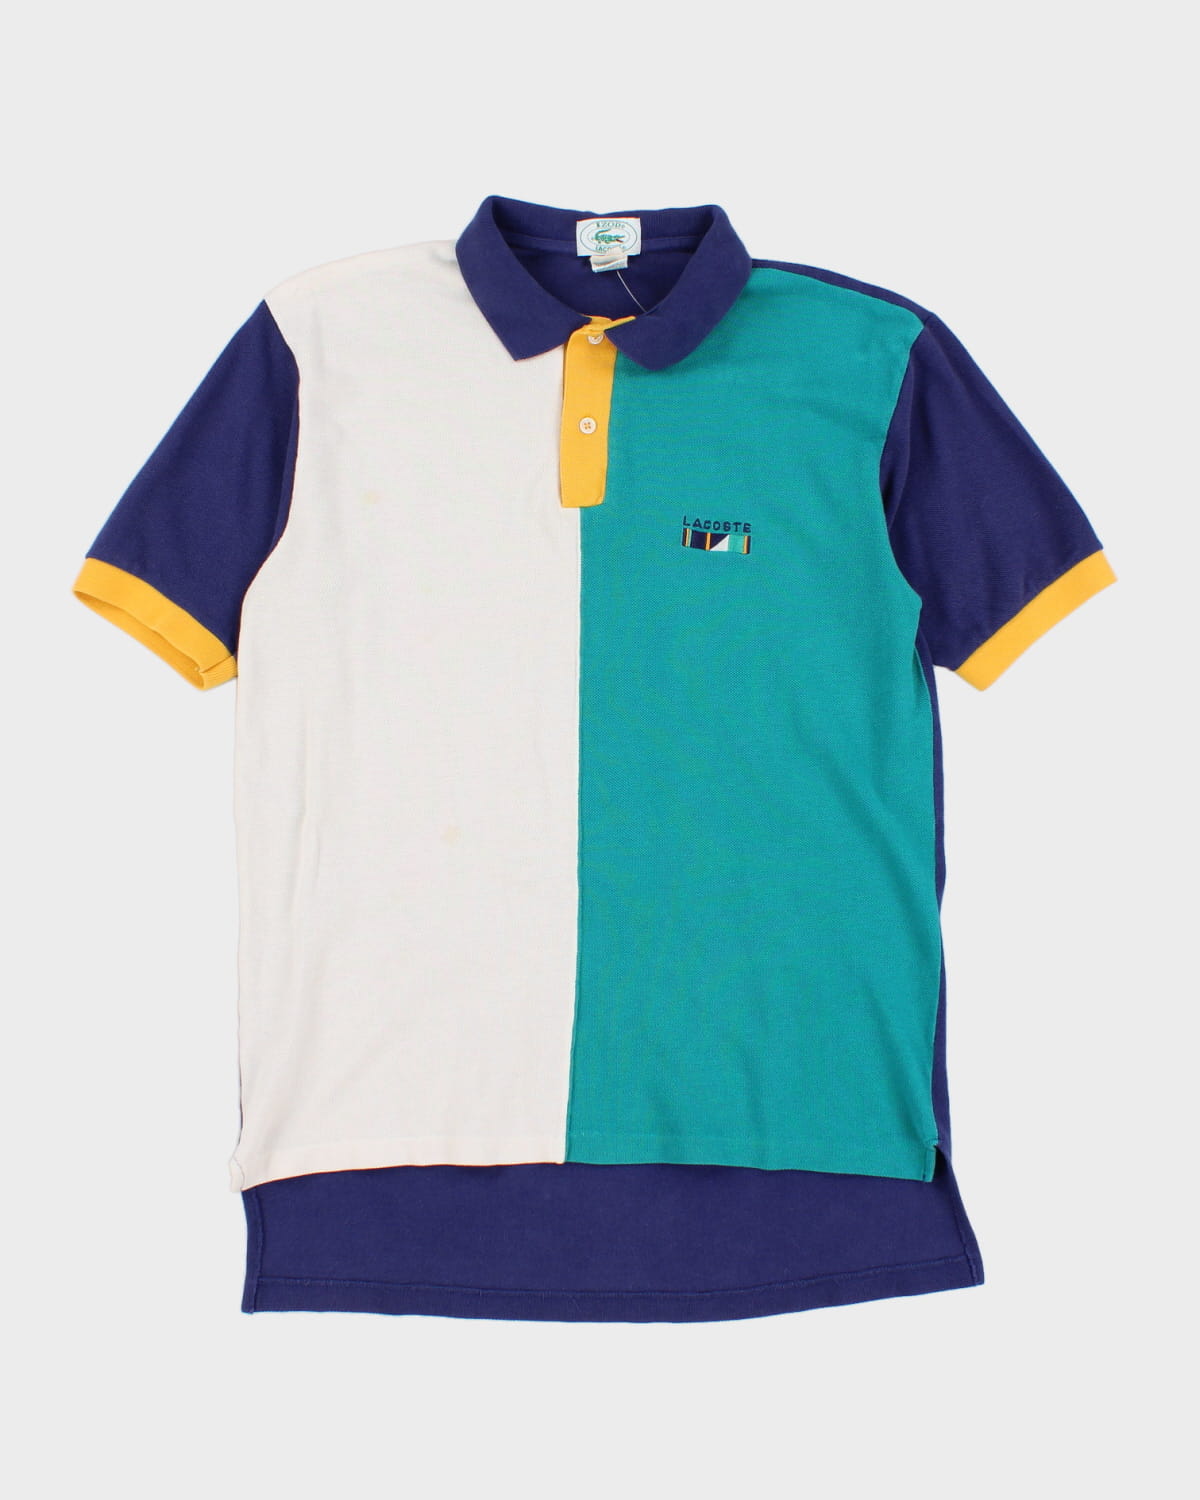 Vintage 80s Lacoste Colour Block Polo Shirt - S